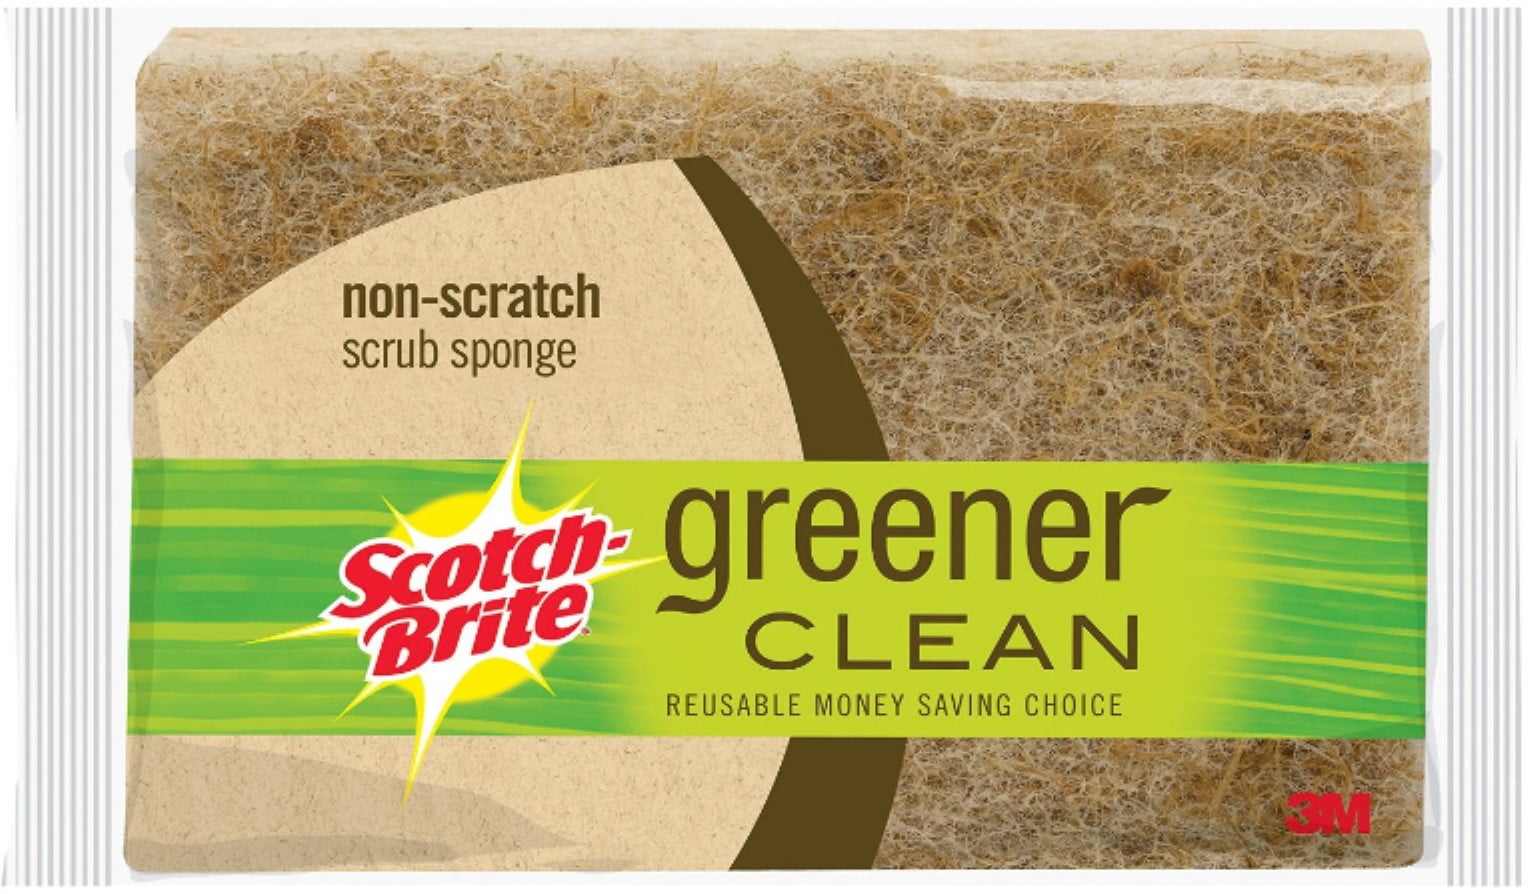 Scotch-Brite® Greener Clean Non-Scratch Scrub Sponge 97033 